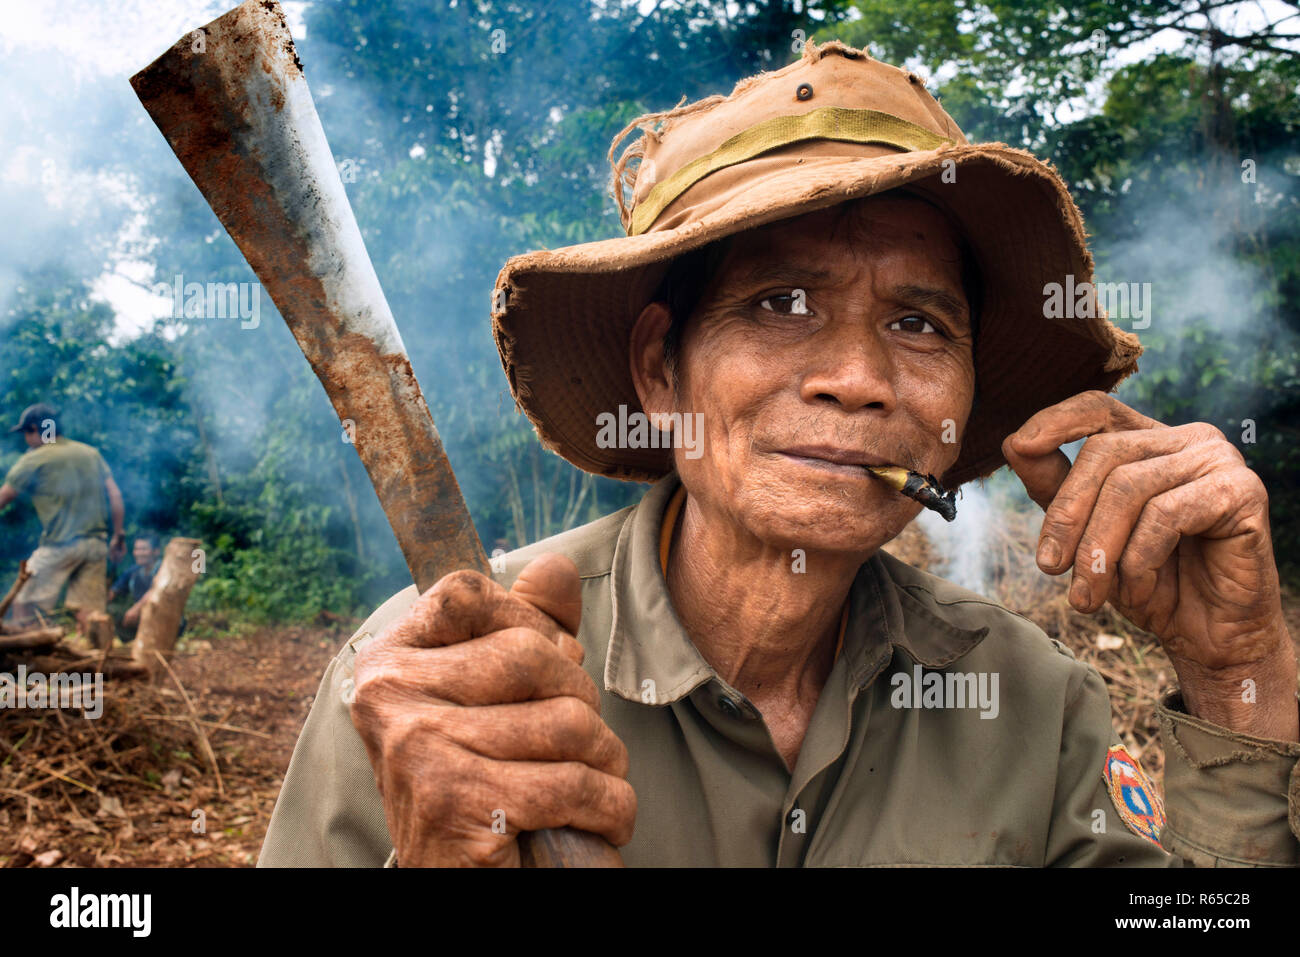 Die entwaldung. Die lokale Bevölkerung clearing Wald für Ackerbau im ländlichen Süden von Laos South East Asia Stockfoto